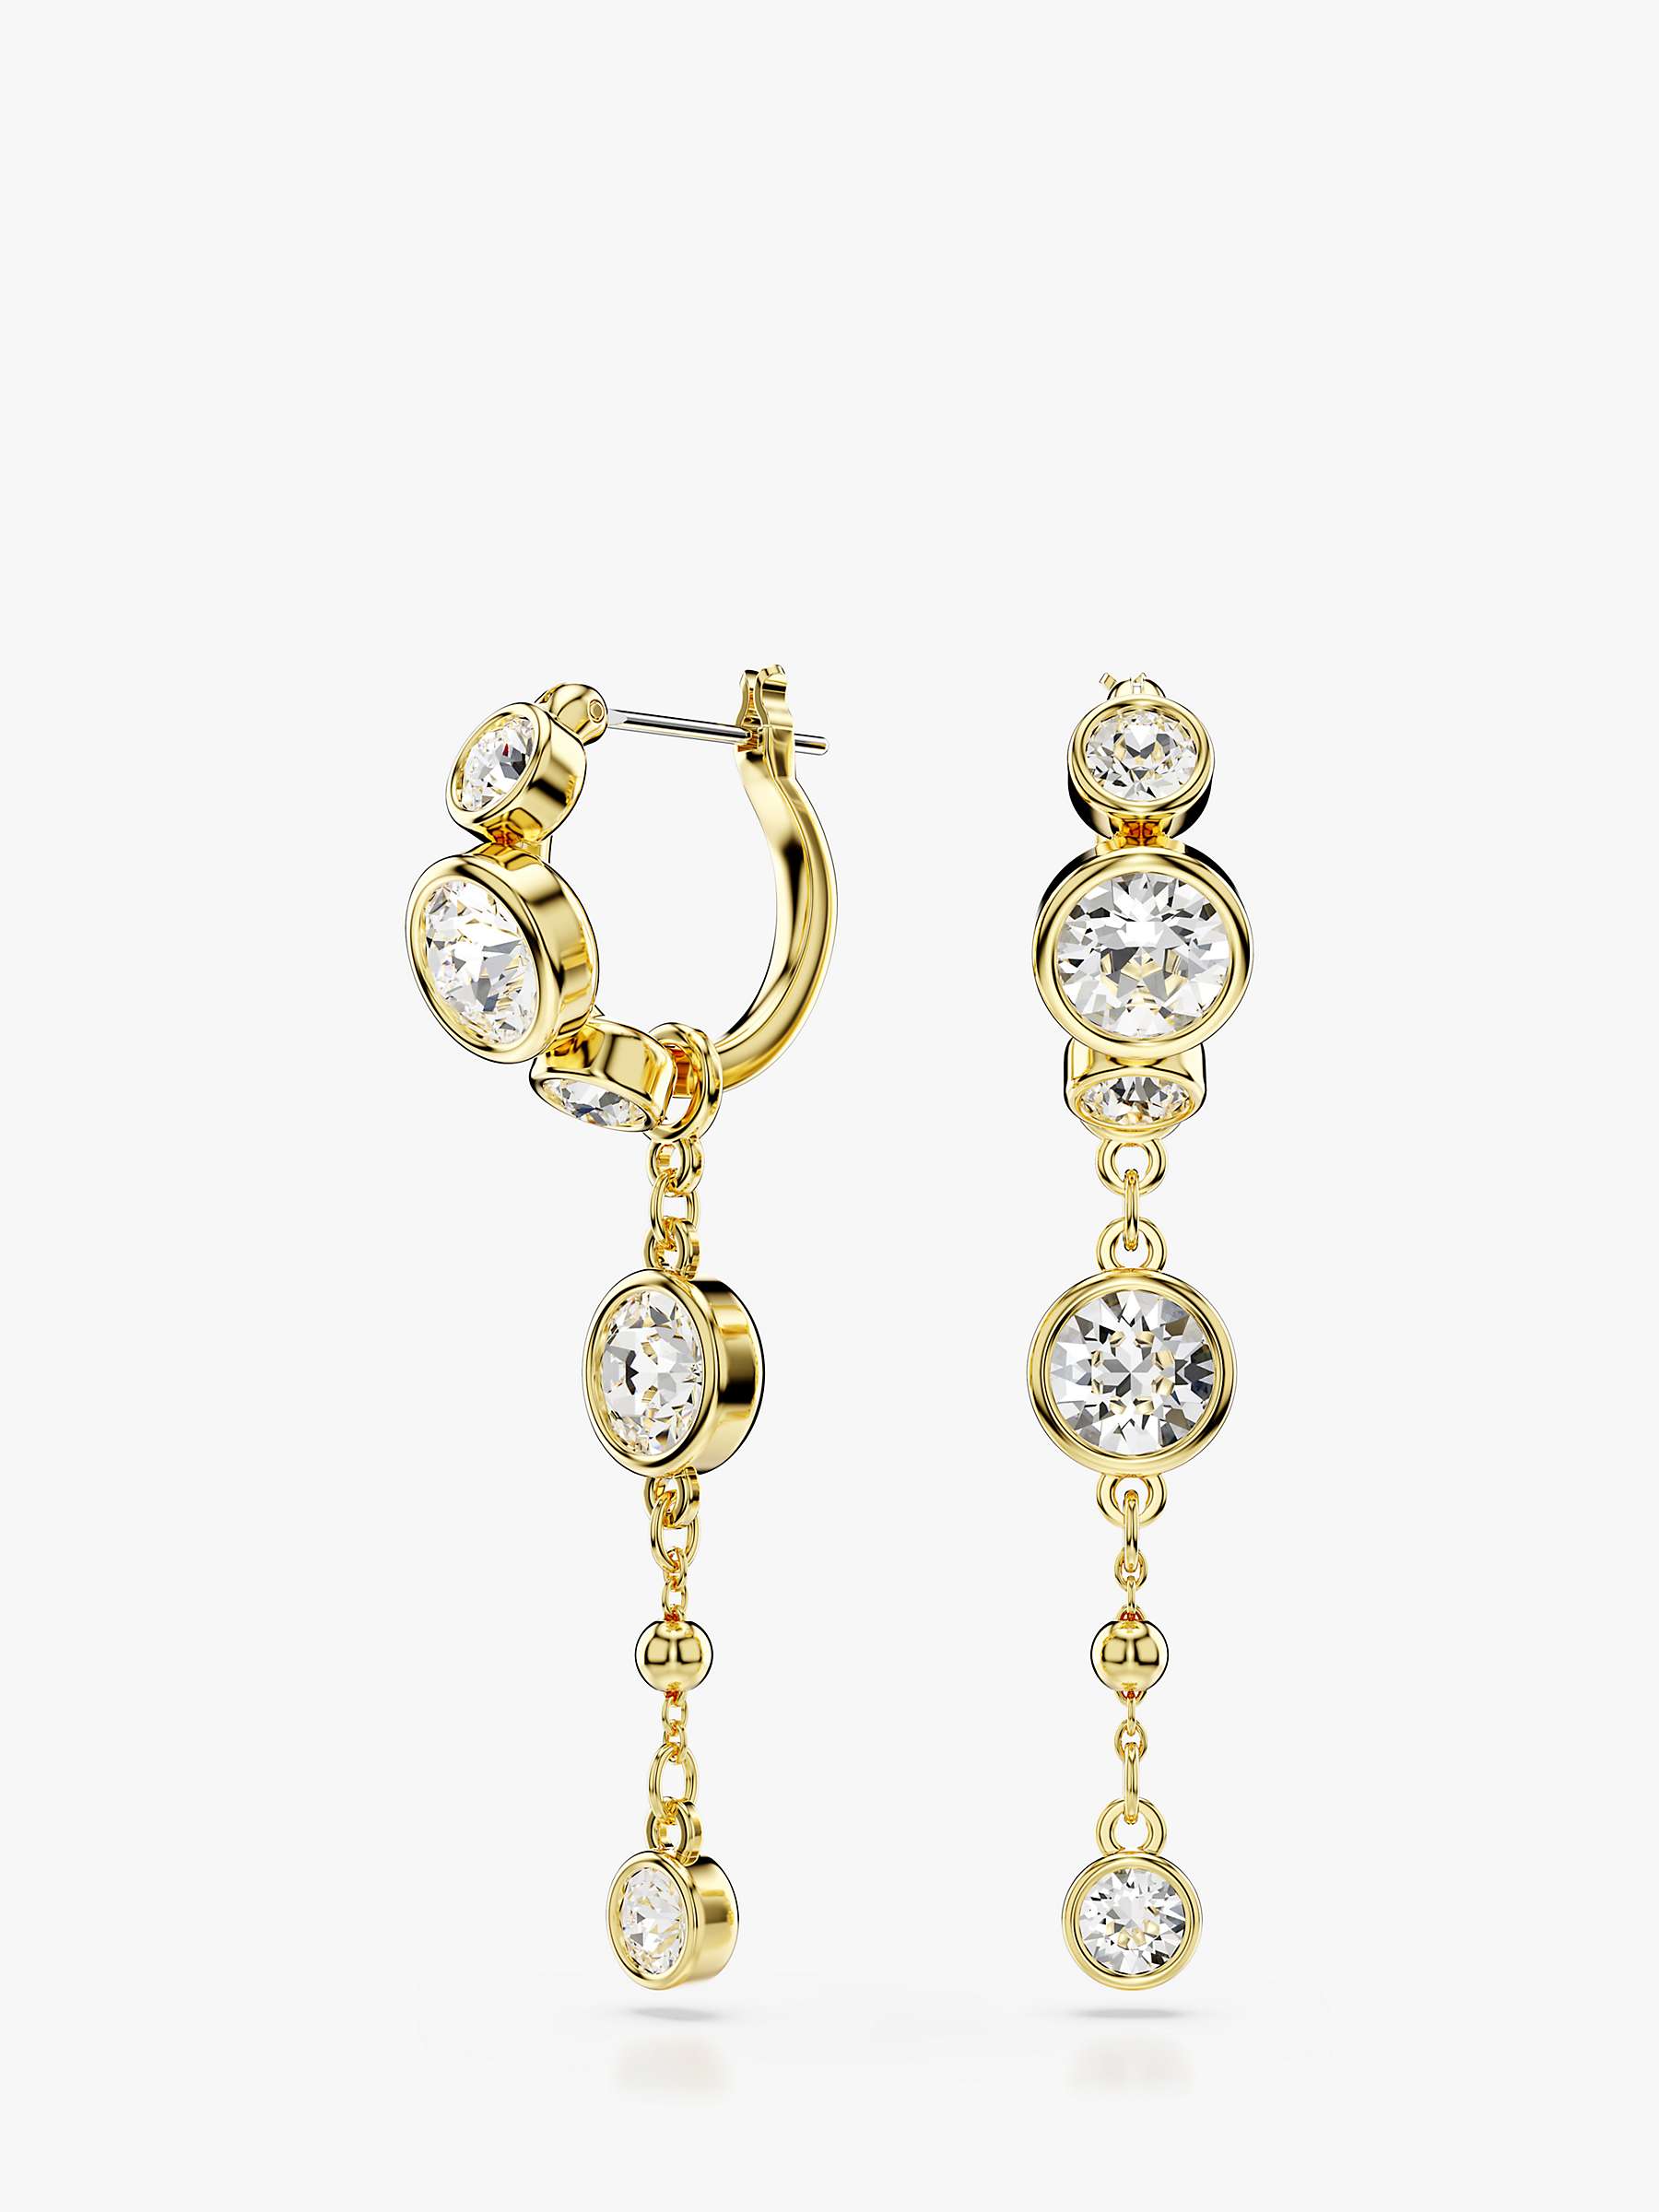 Buy Swarovski Crystal Hoop and Chain Earrings, Gold Online at johnlewis.com